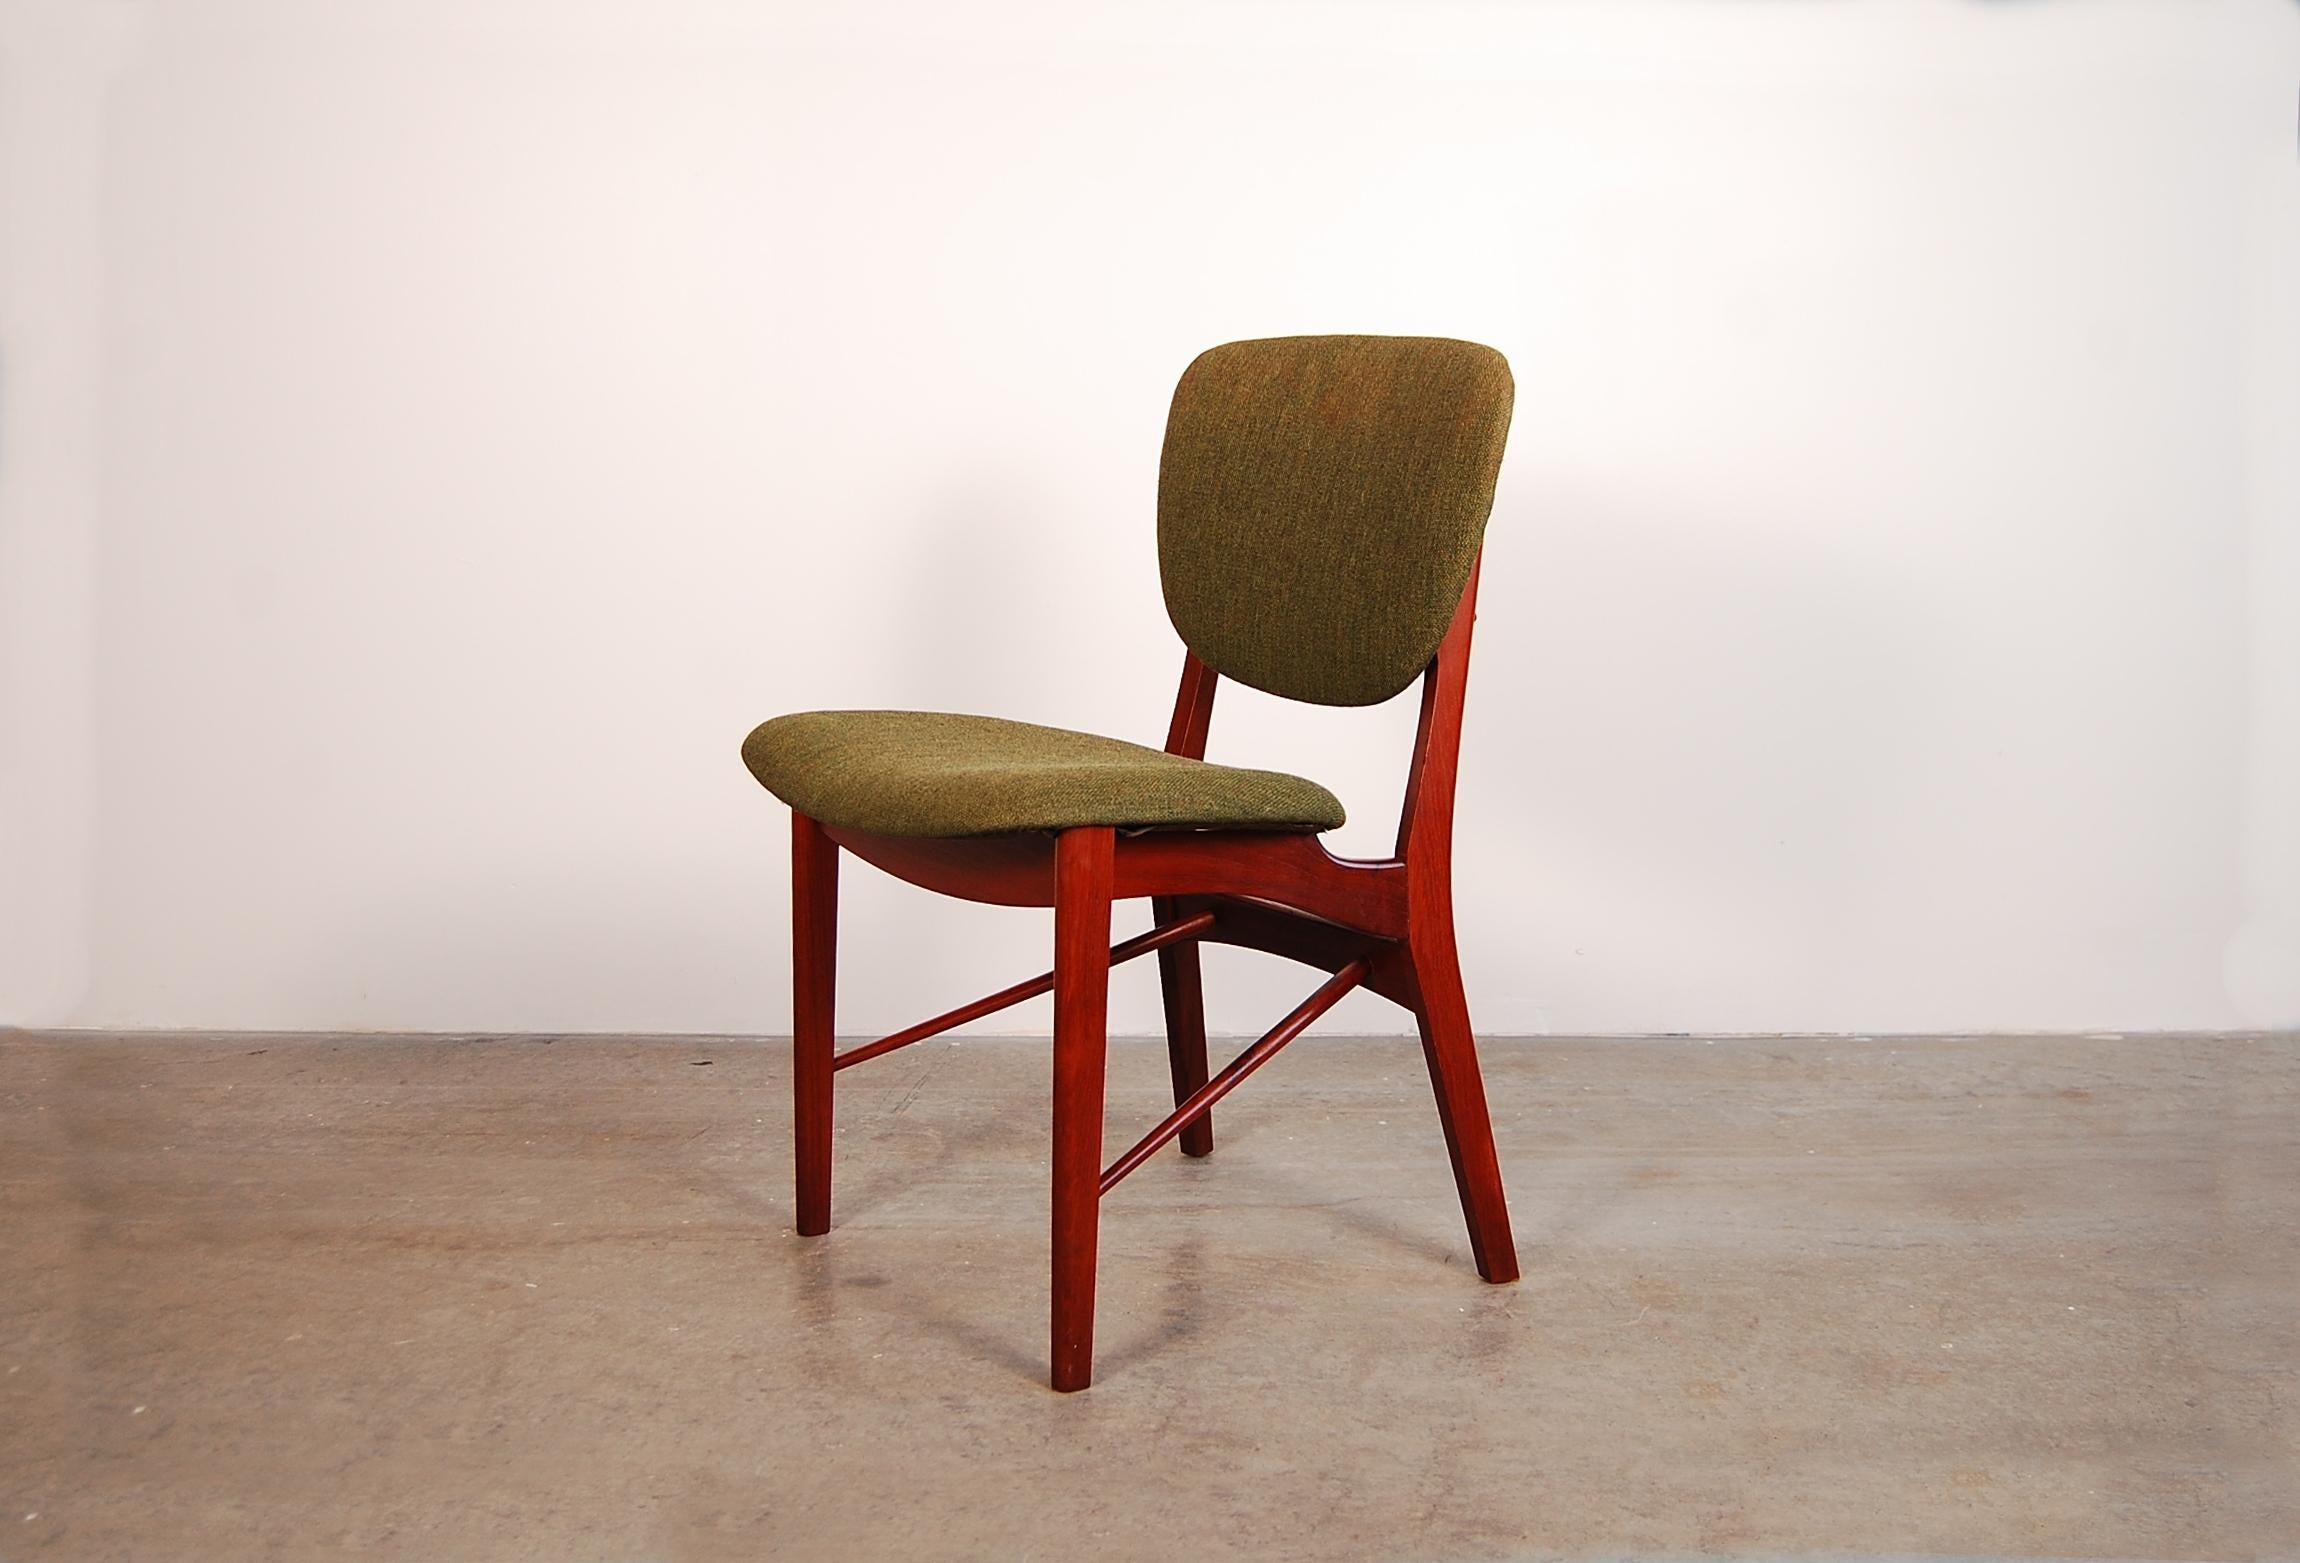 Ein einzelner Stuhl aus Teakholz, entworfen und hergestellt von Niels Vodder in Kopenhagen, Dänemark, um 1962. Wahrscheinlich wurde er als Esszimmerstuhl entworfen, aber er wäre auch als Schreibtischstuhl geeignet. Der grüne Wollstoff scheint